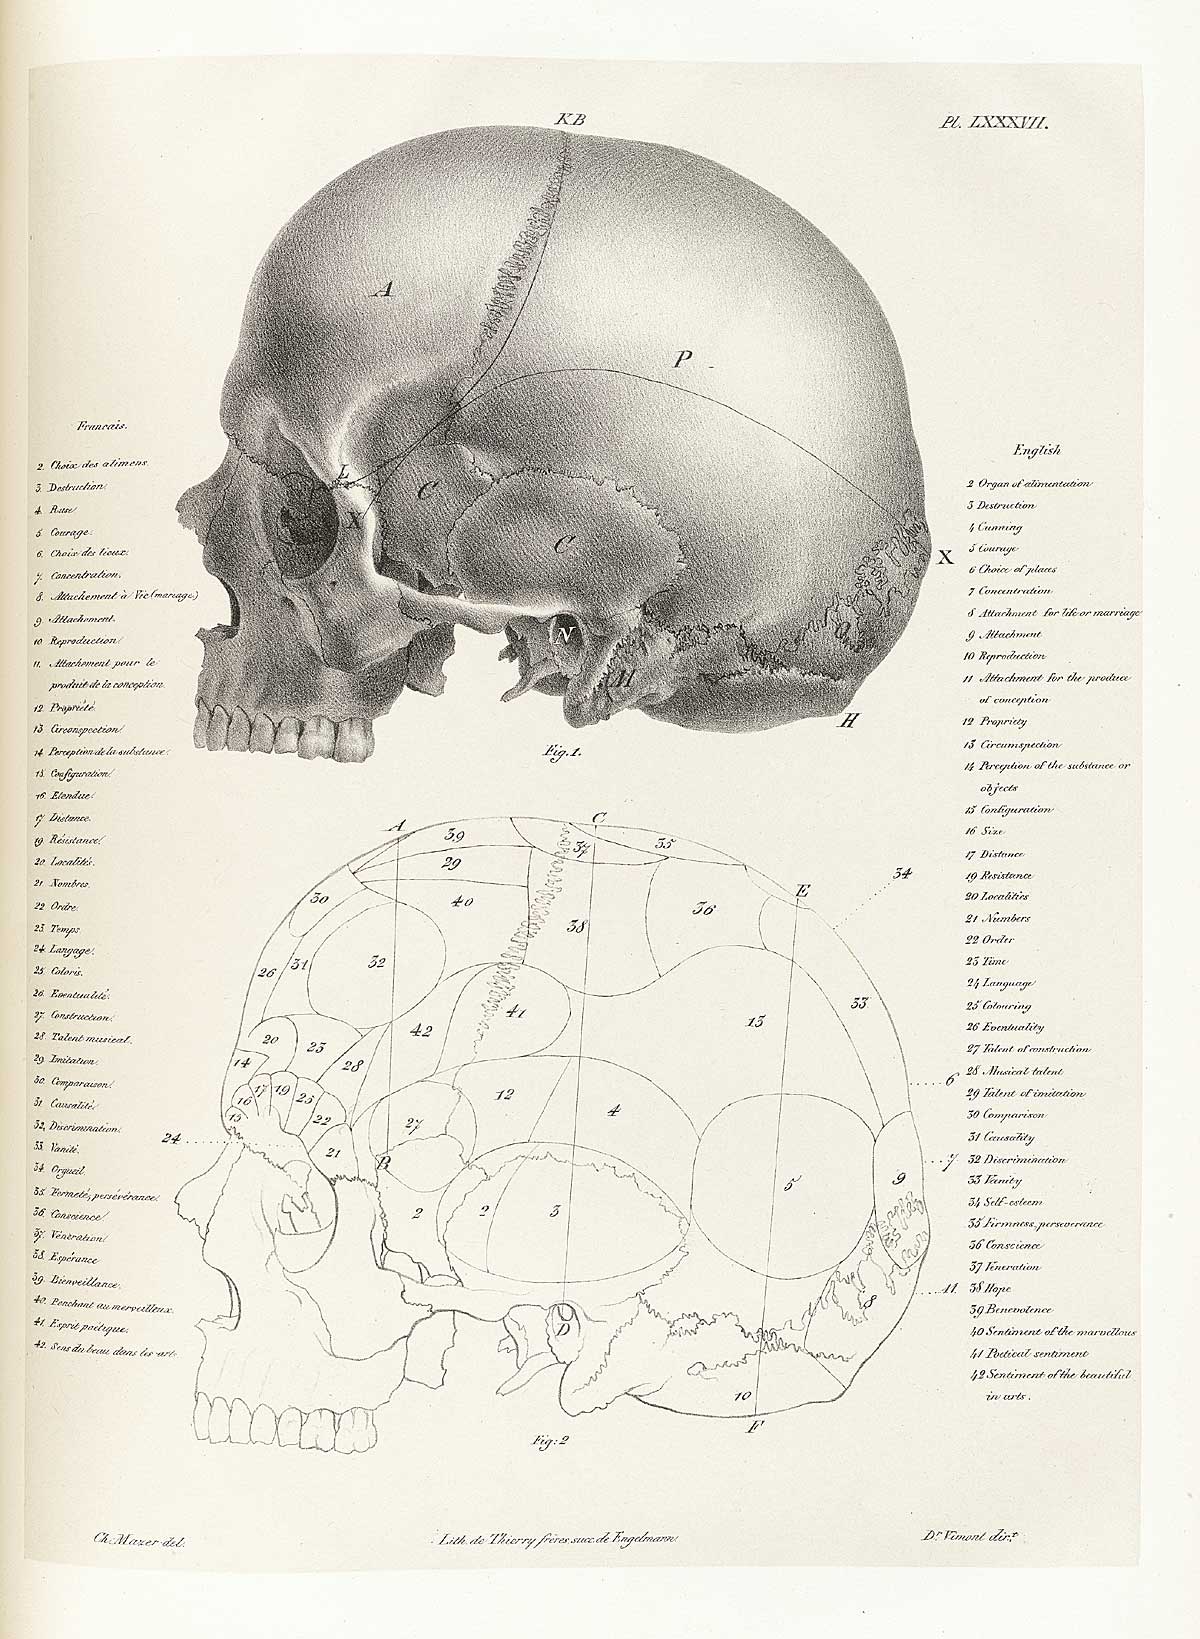 Table 87 of Joseph Vimont's Traité de phrénologie humaine et comparée, featuring the side view of two skulls depicting the brain localization.